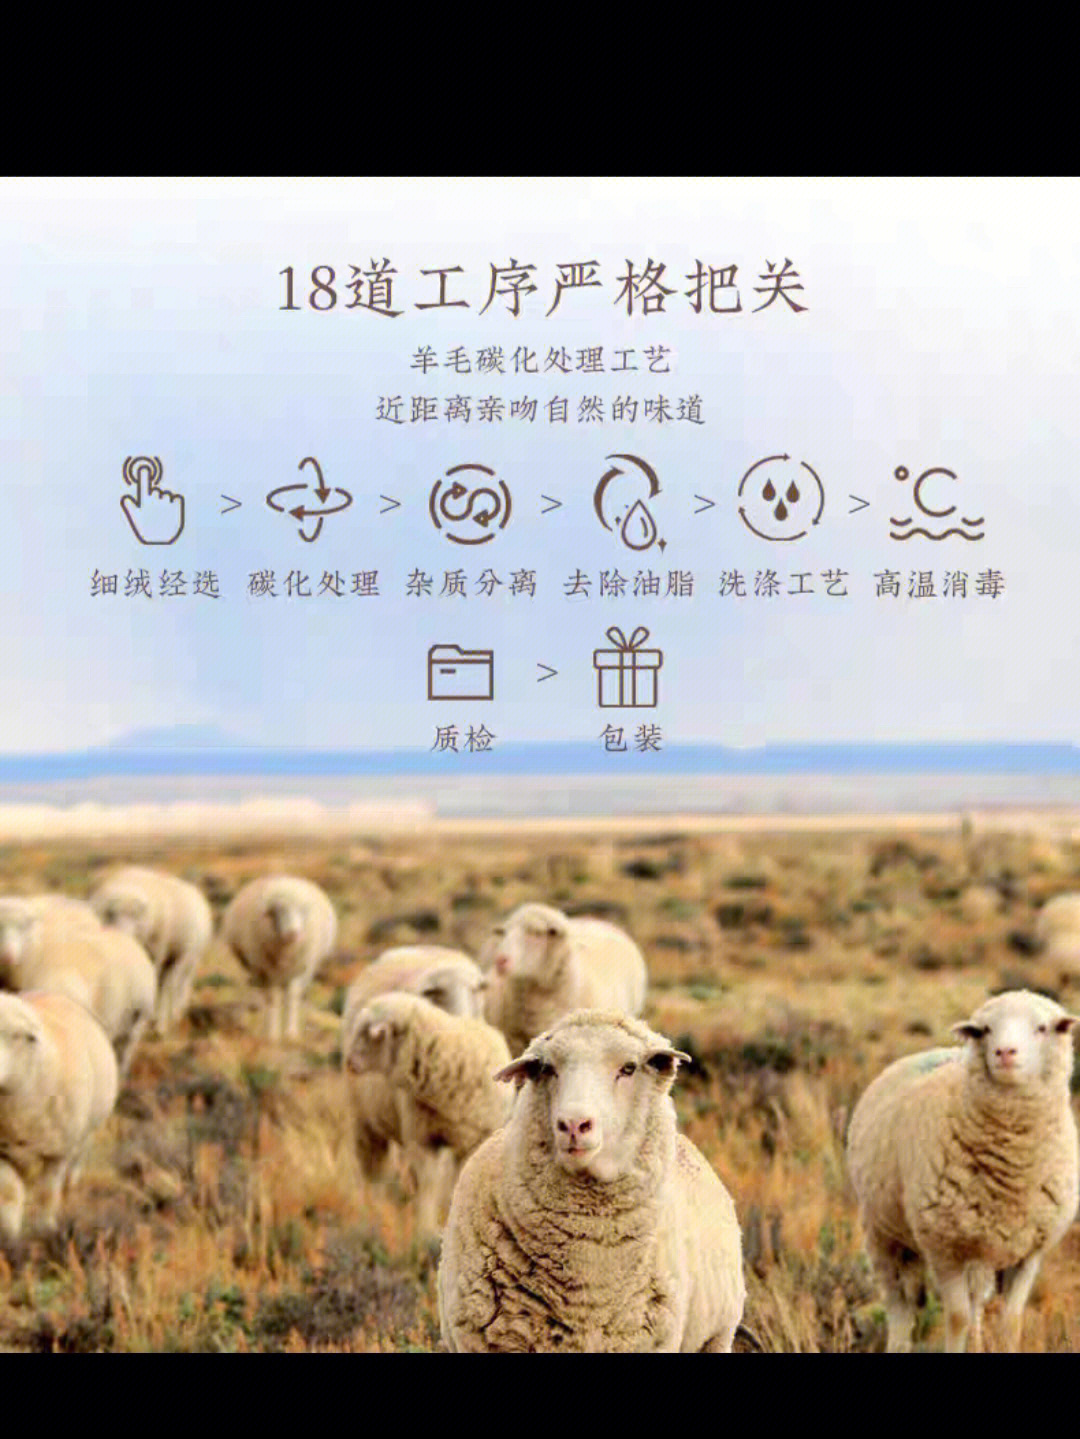 羊毛被广告录音图片